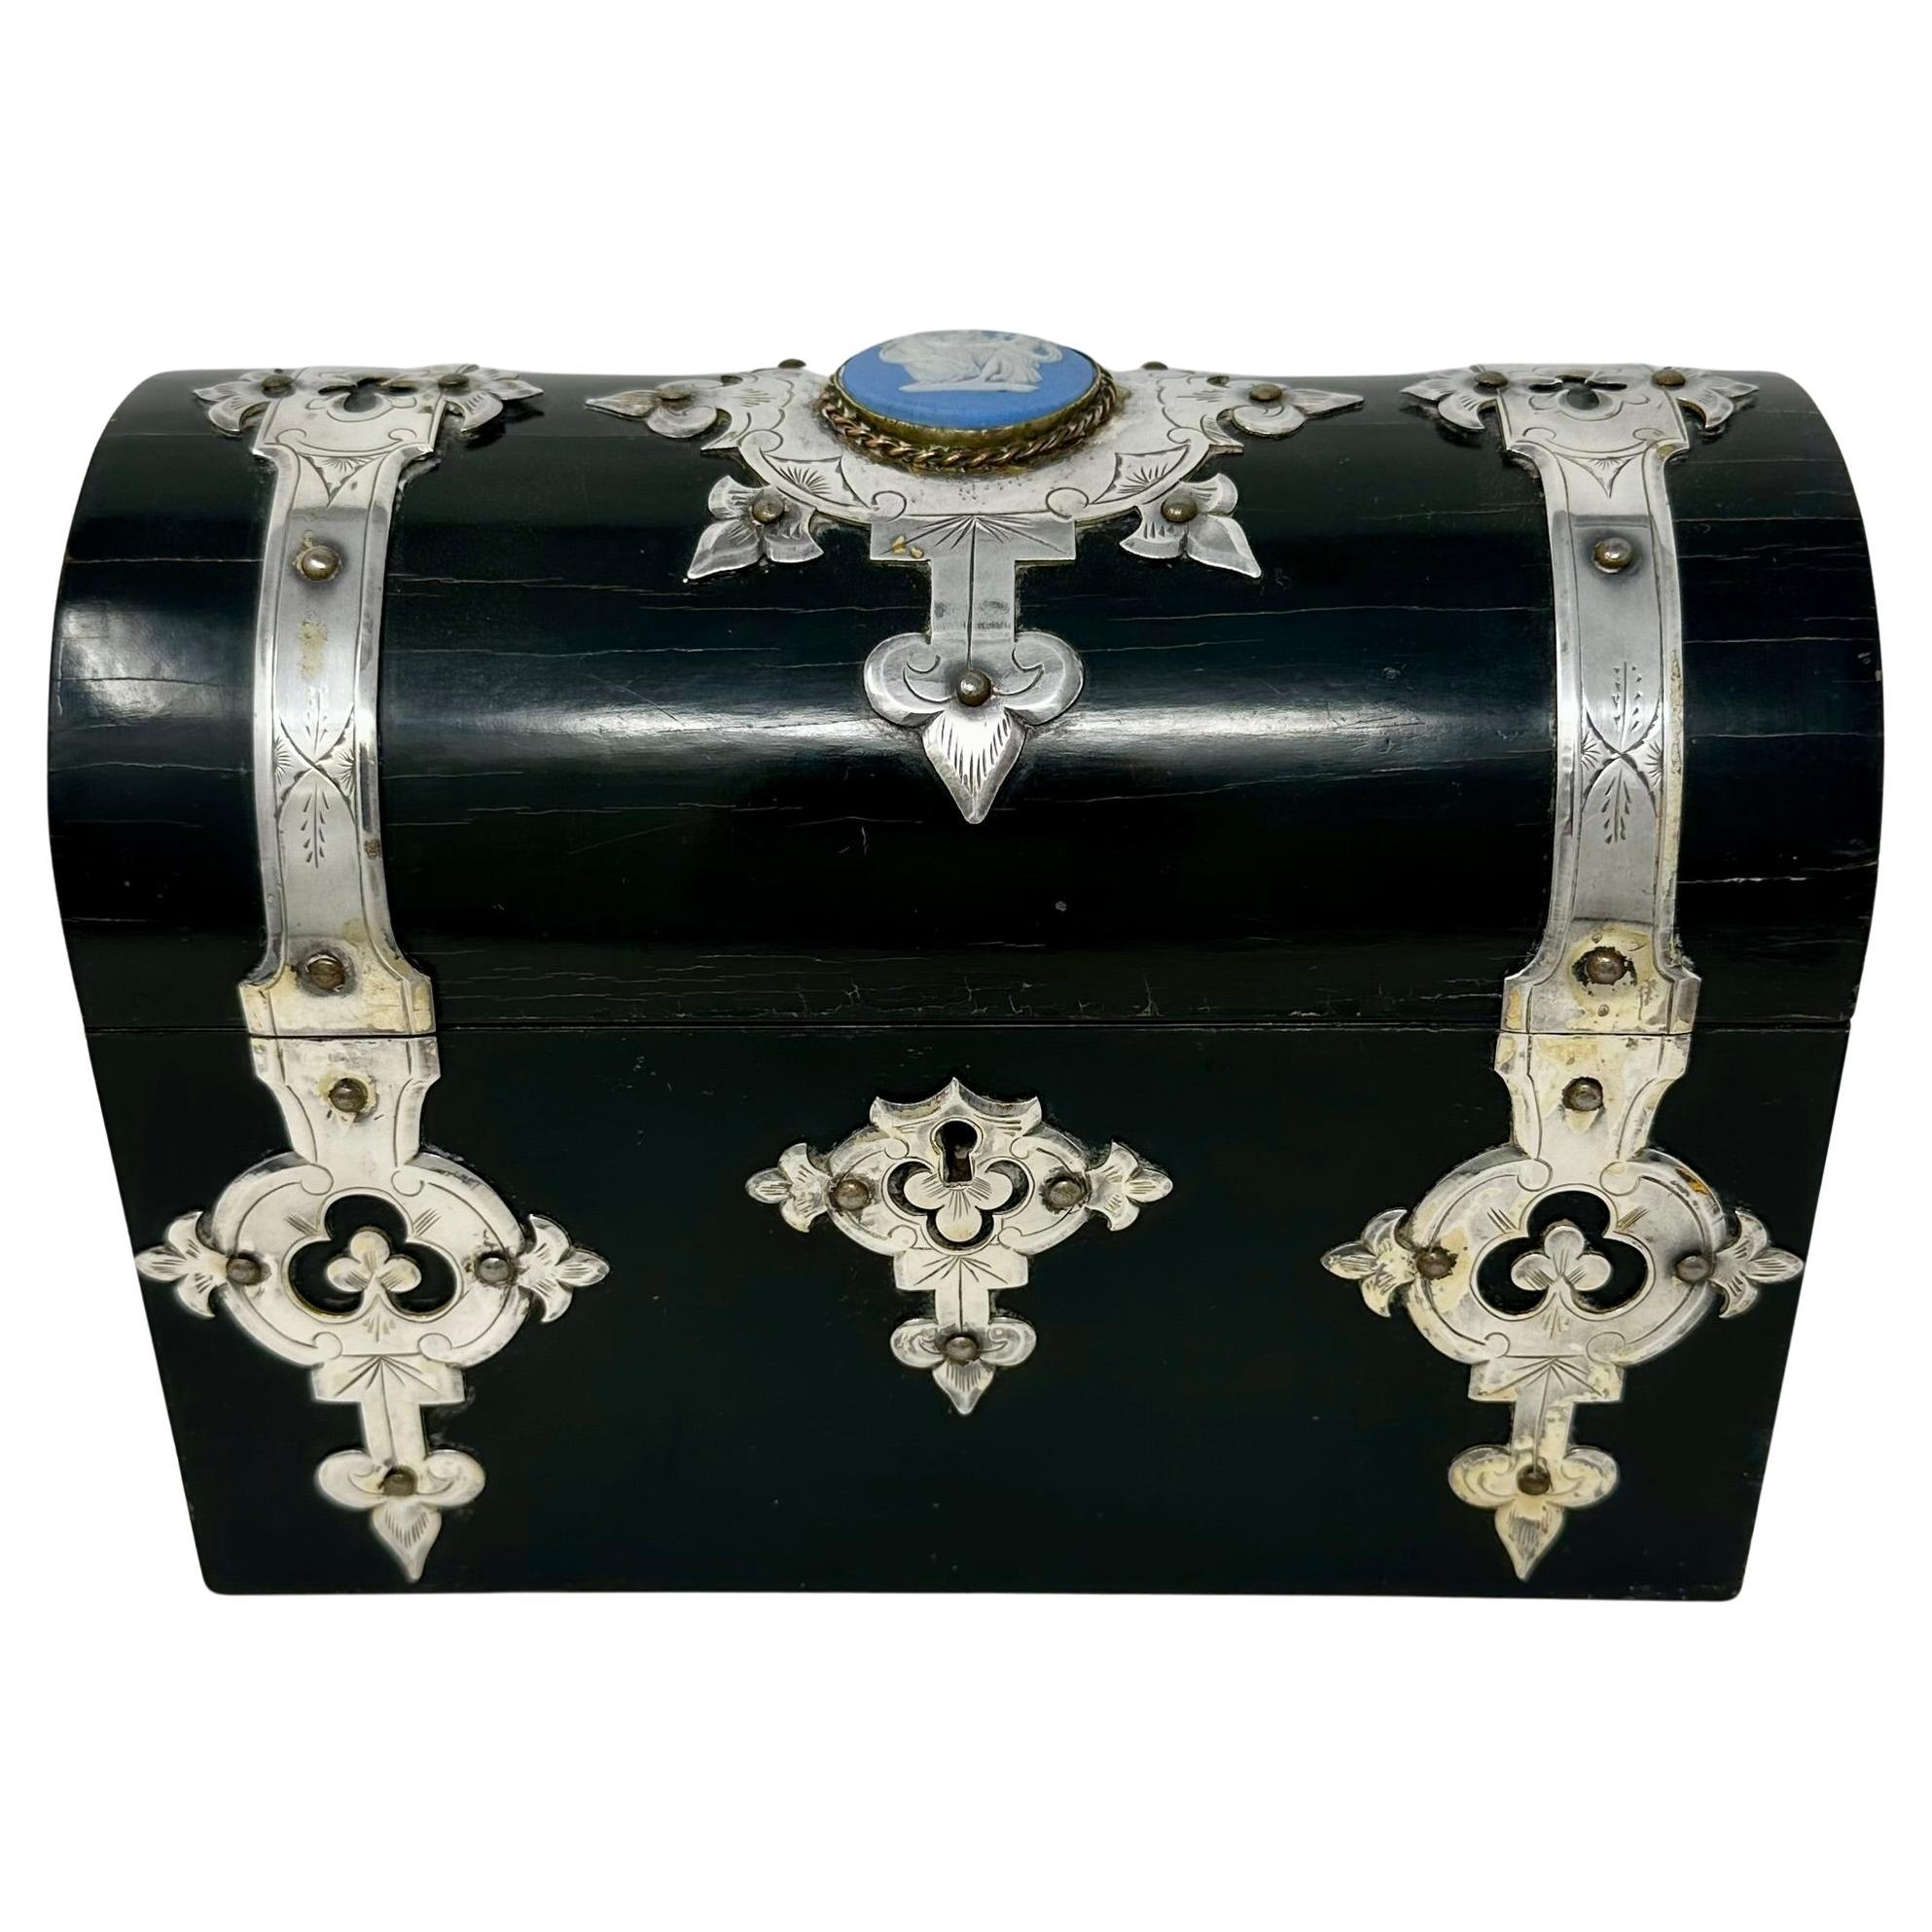 Antique English Wedgwood Porcelain and Sheffield Silver Mounted Ebonized Jewel Box, Circa 1880.